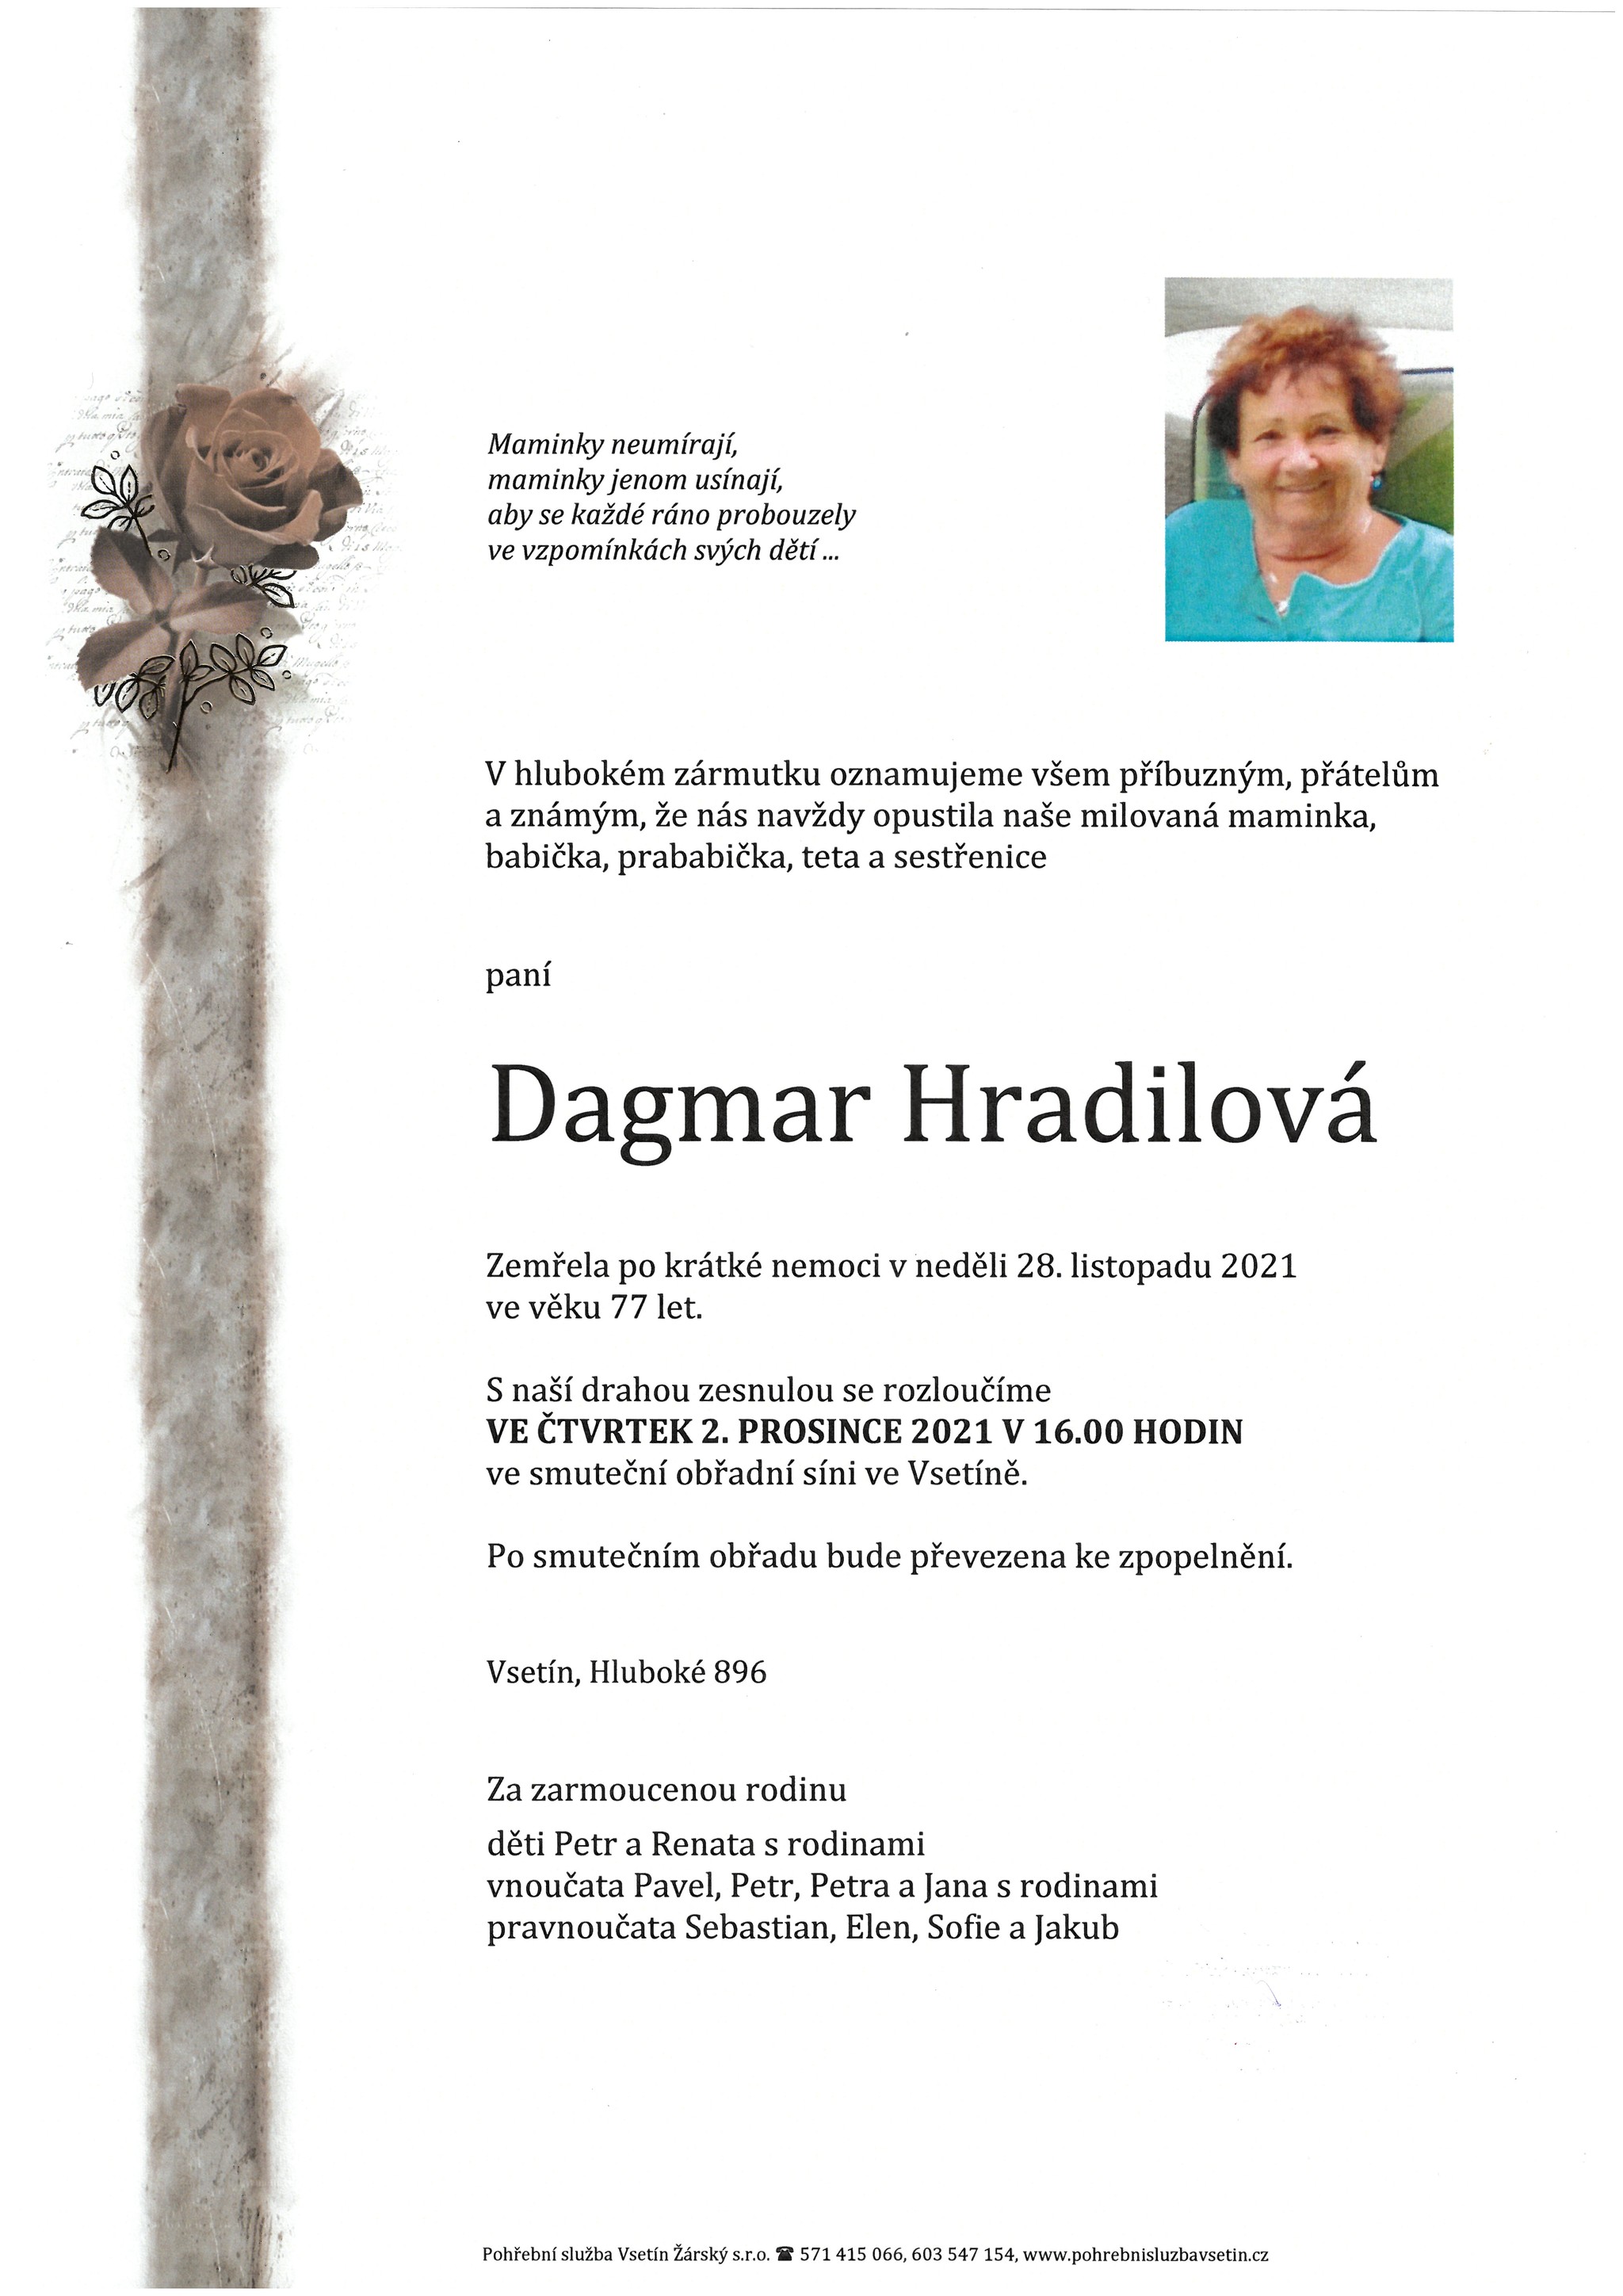 Dagmar Hradilová